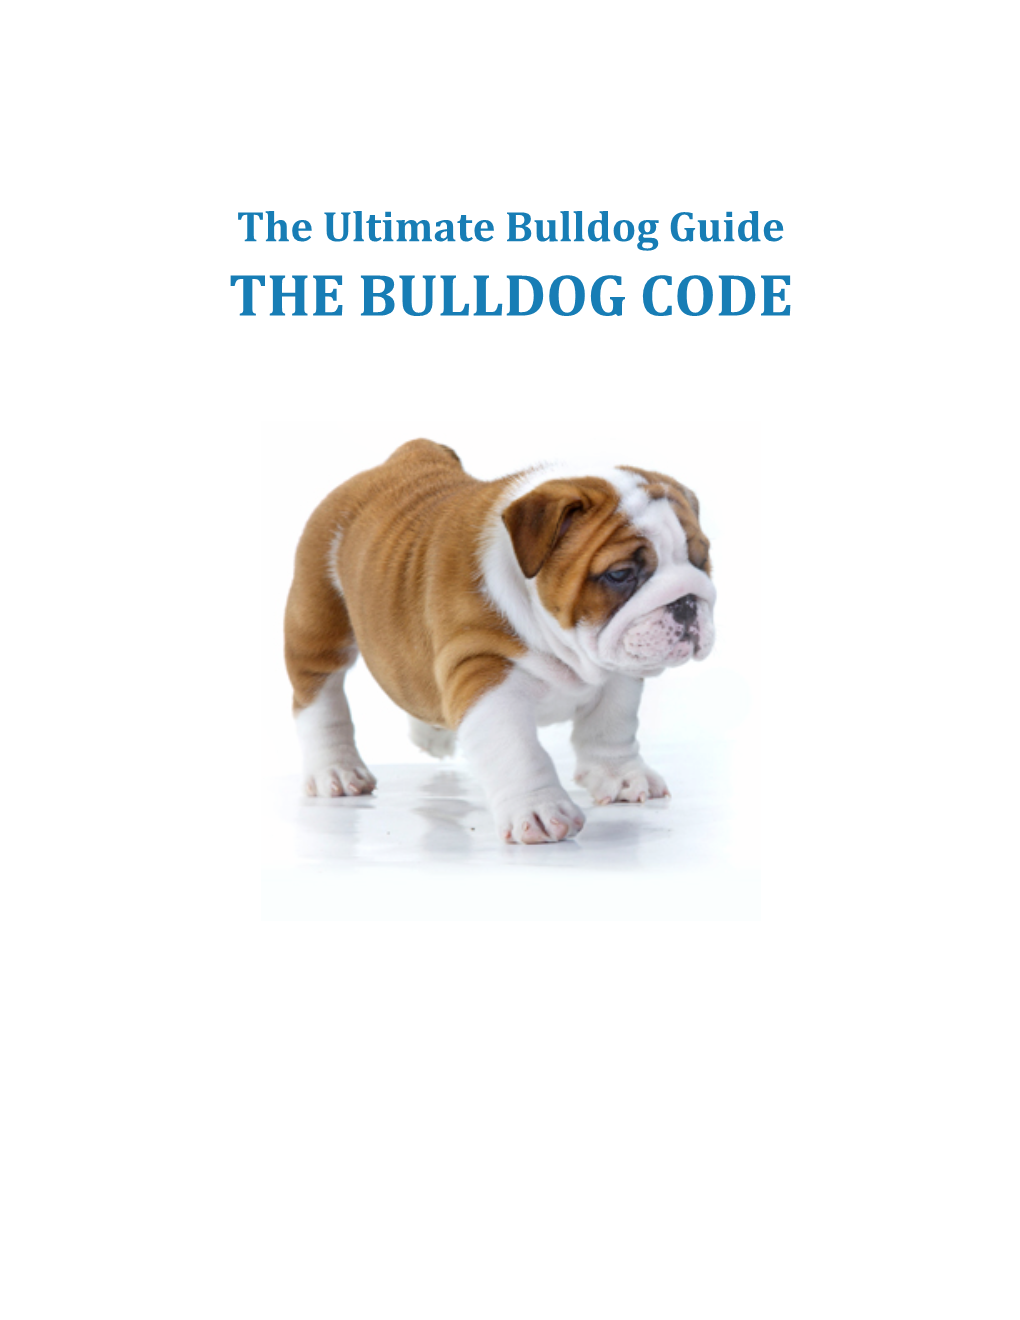 The Bulldog Code